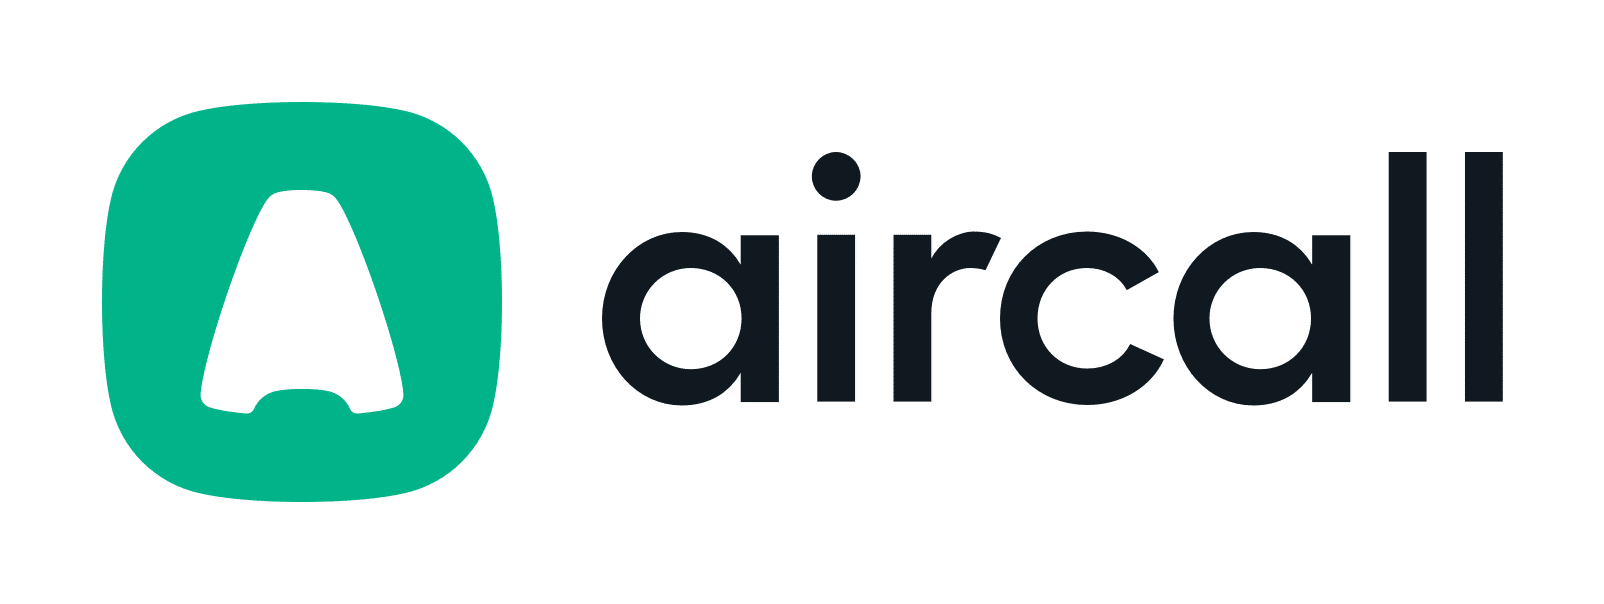 aircall logo